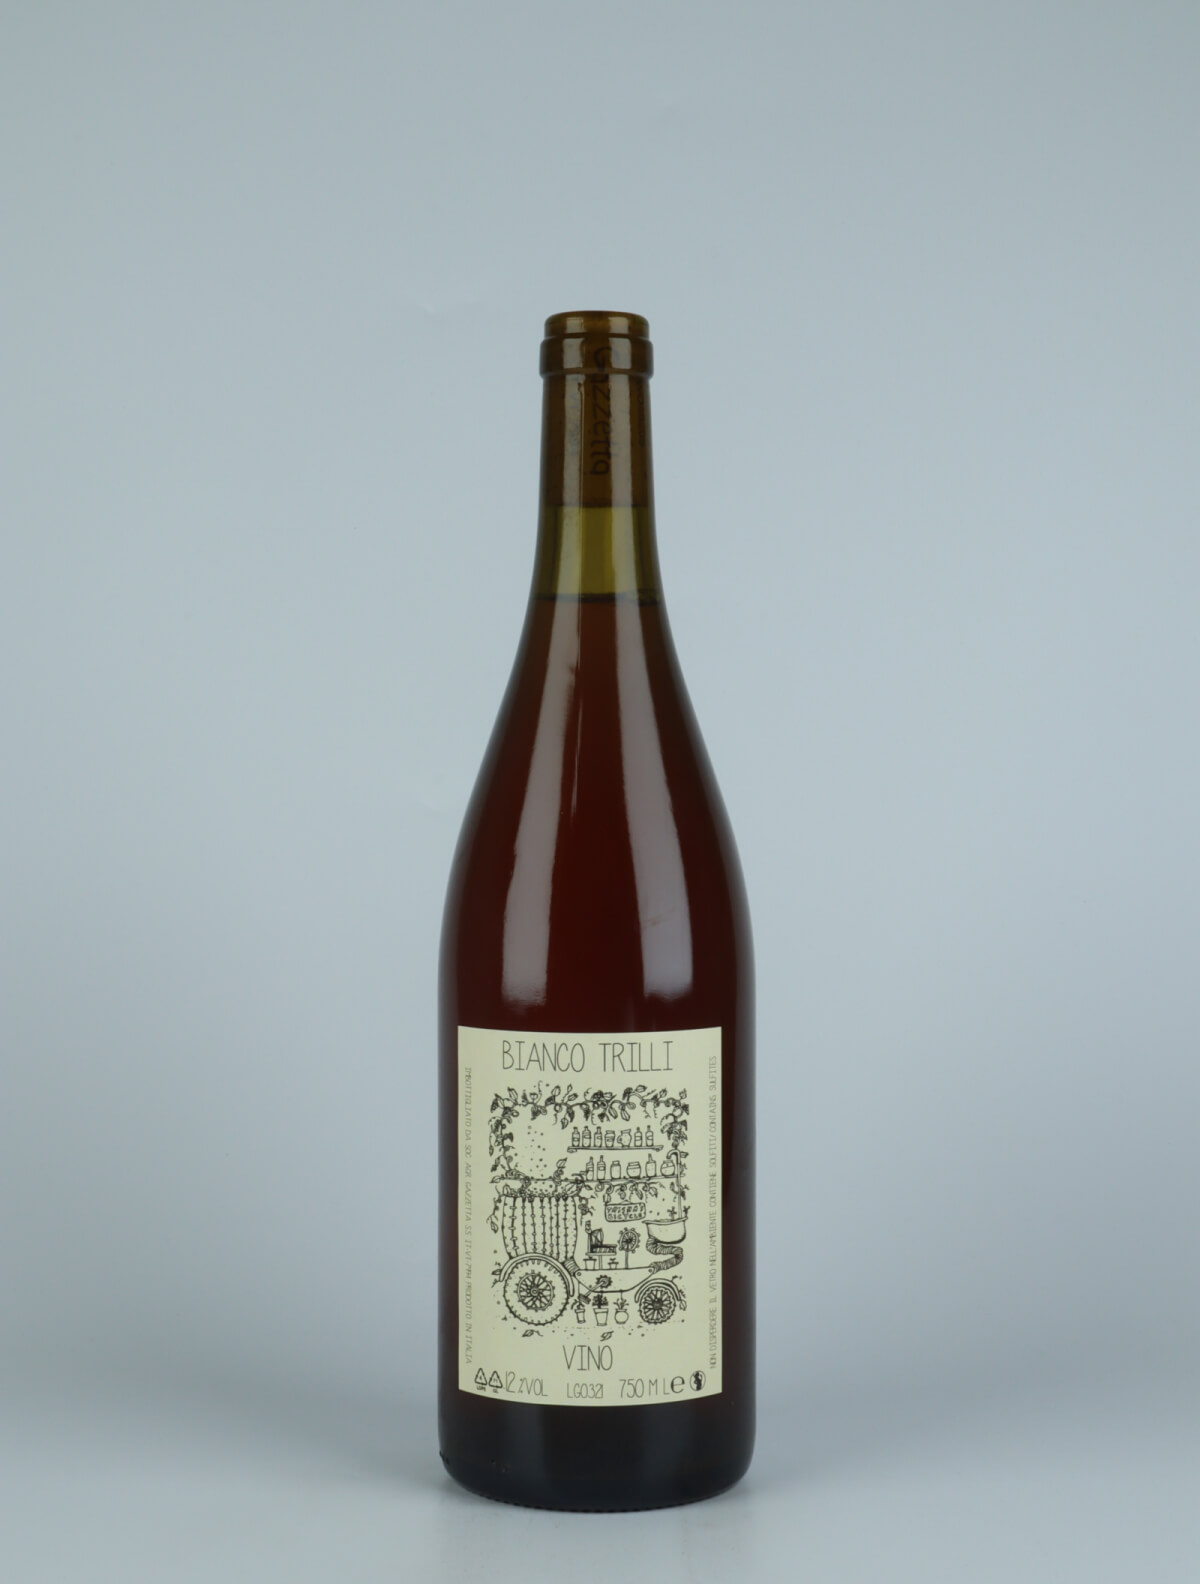 A bottle 2021 Vino Bianco Trilli Orange wine from Gazzetta, Lazio in Italy